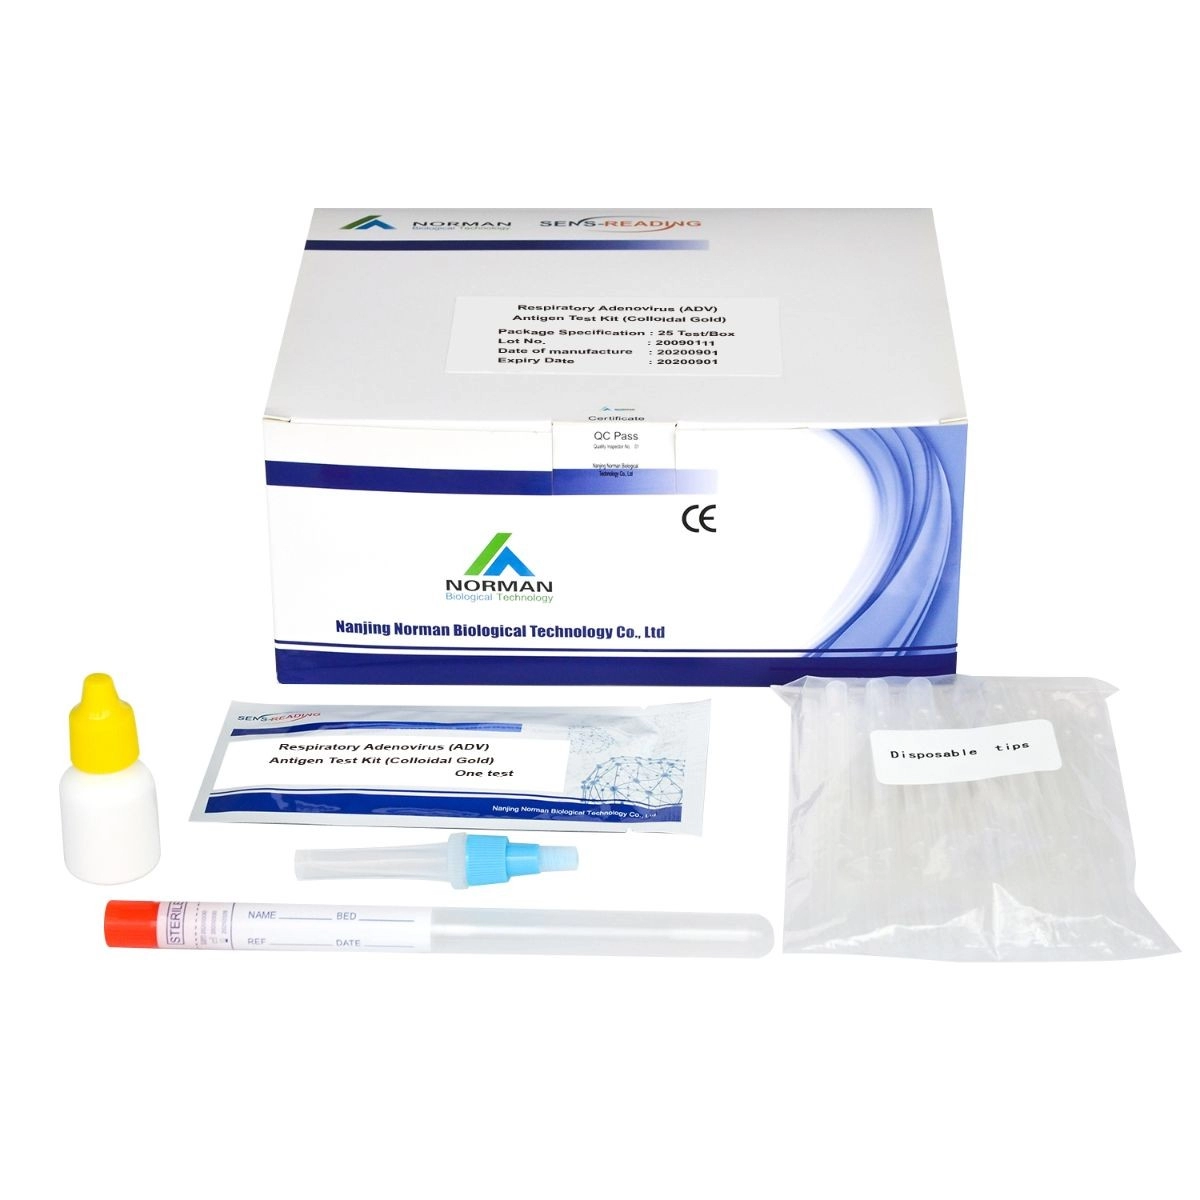 Kit per il test dell'antigene dell'adenovirus respiratorio (ADV).